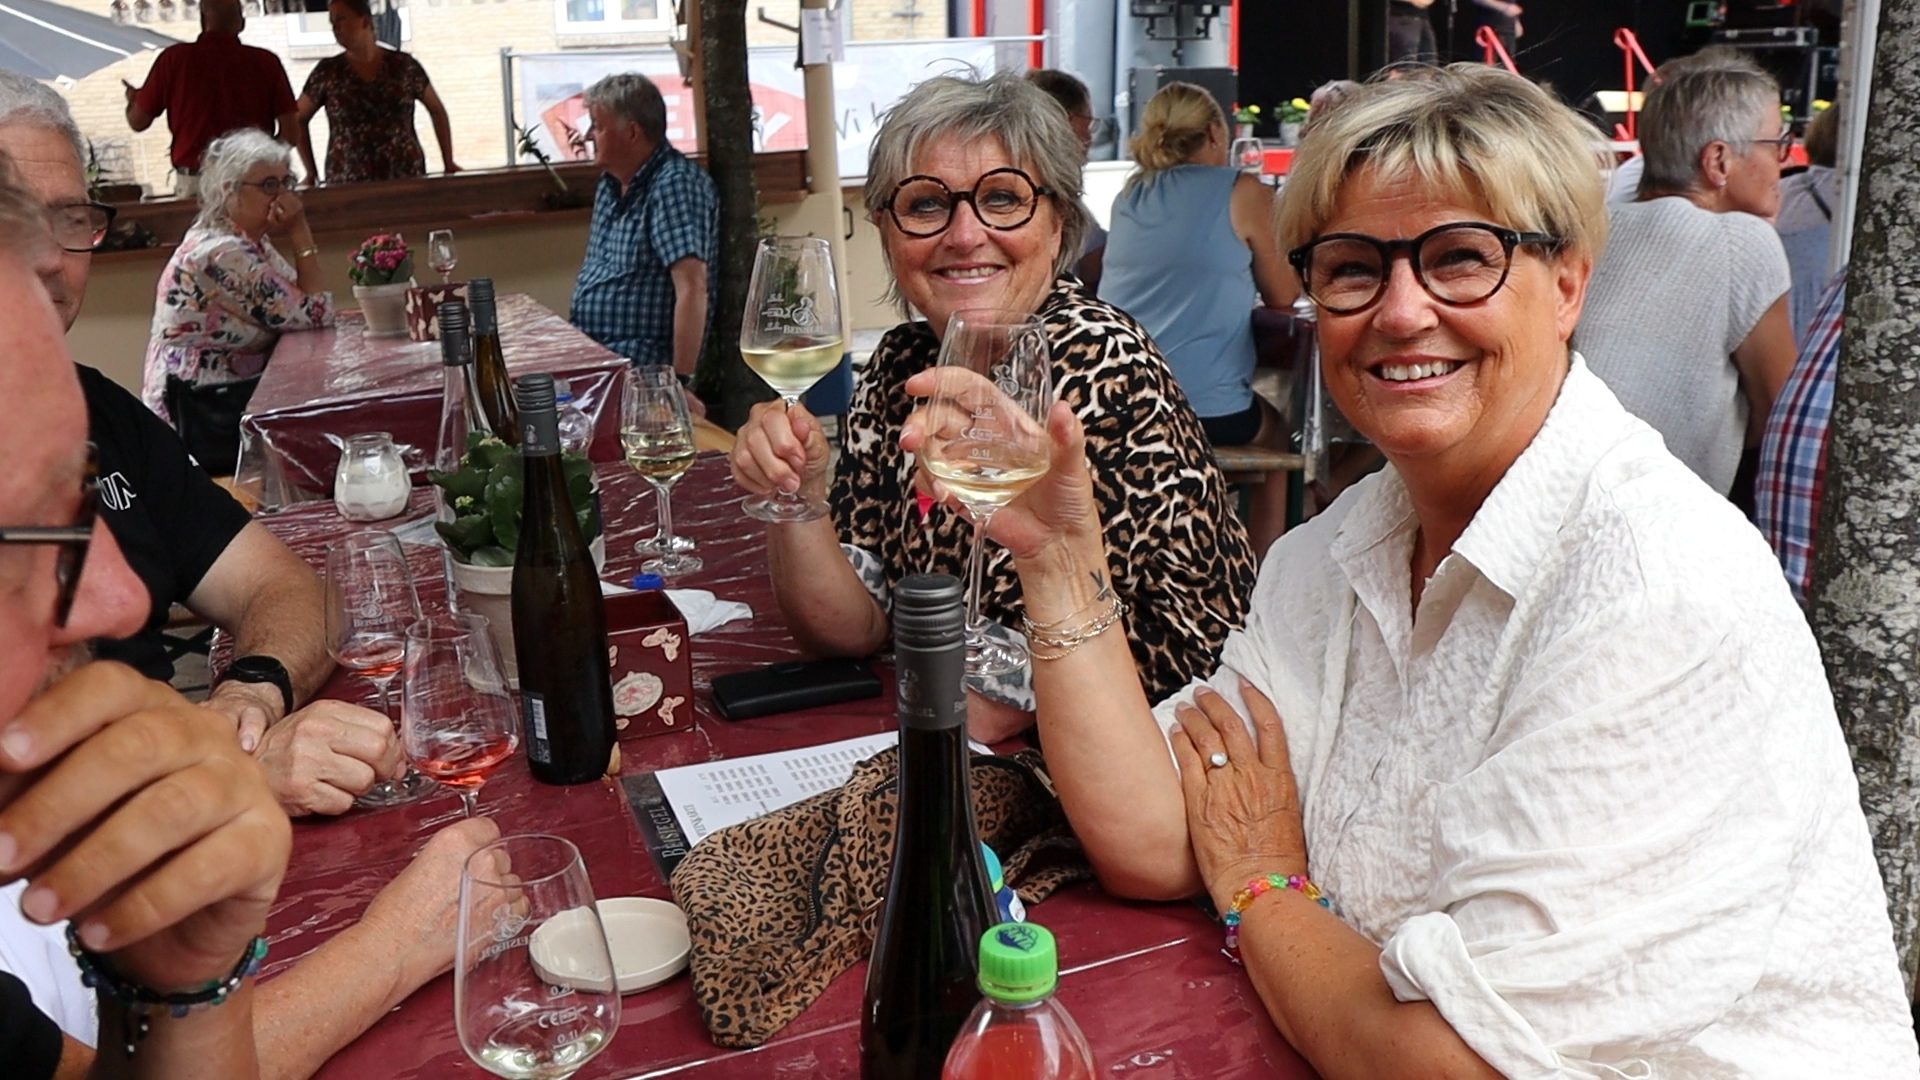 Vinfestival atter tilbage i Christiansfeld